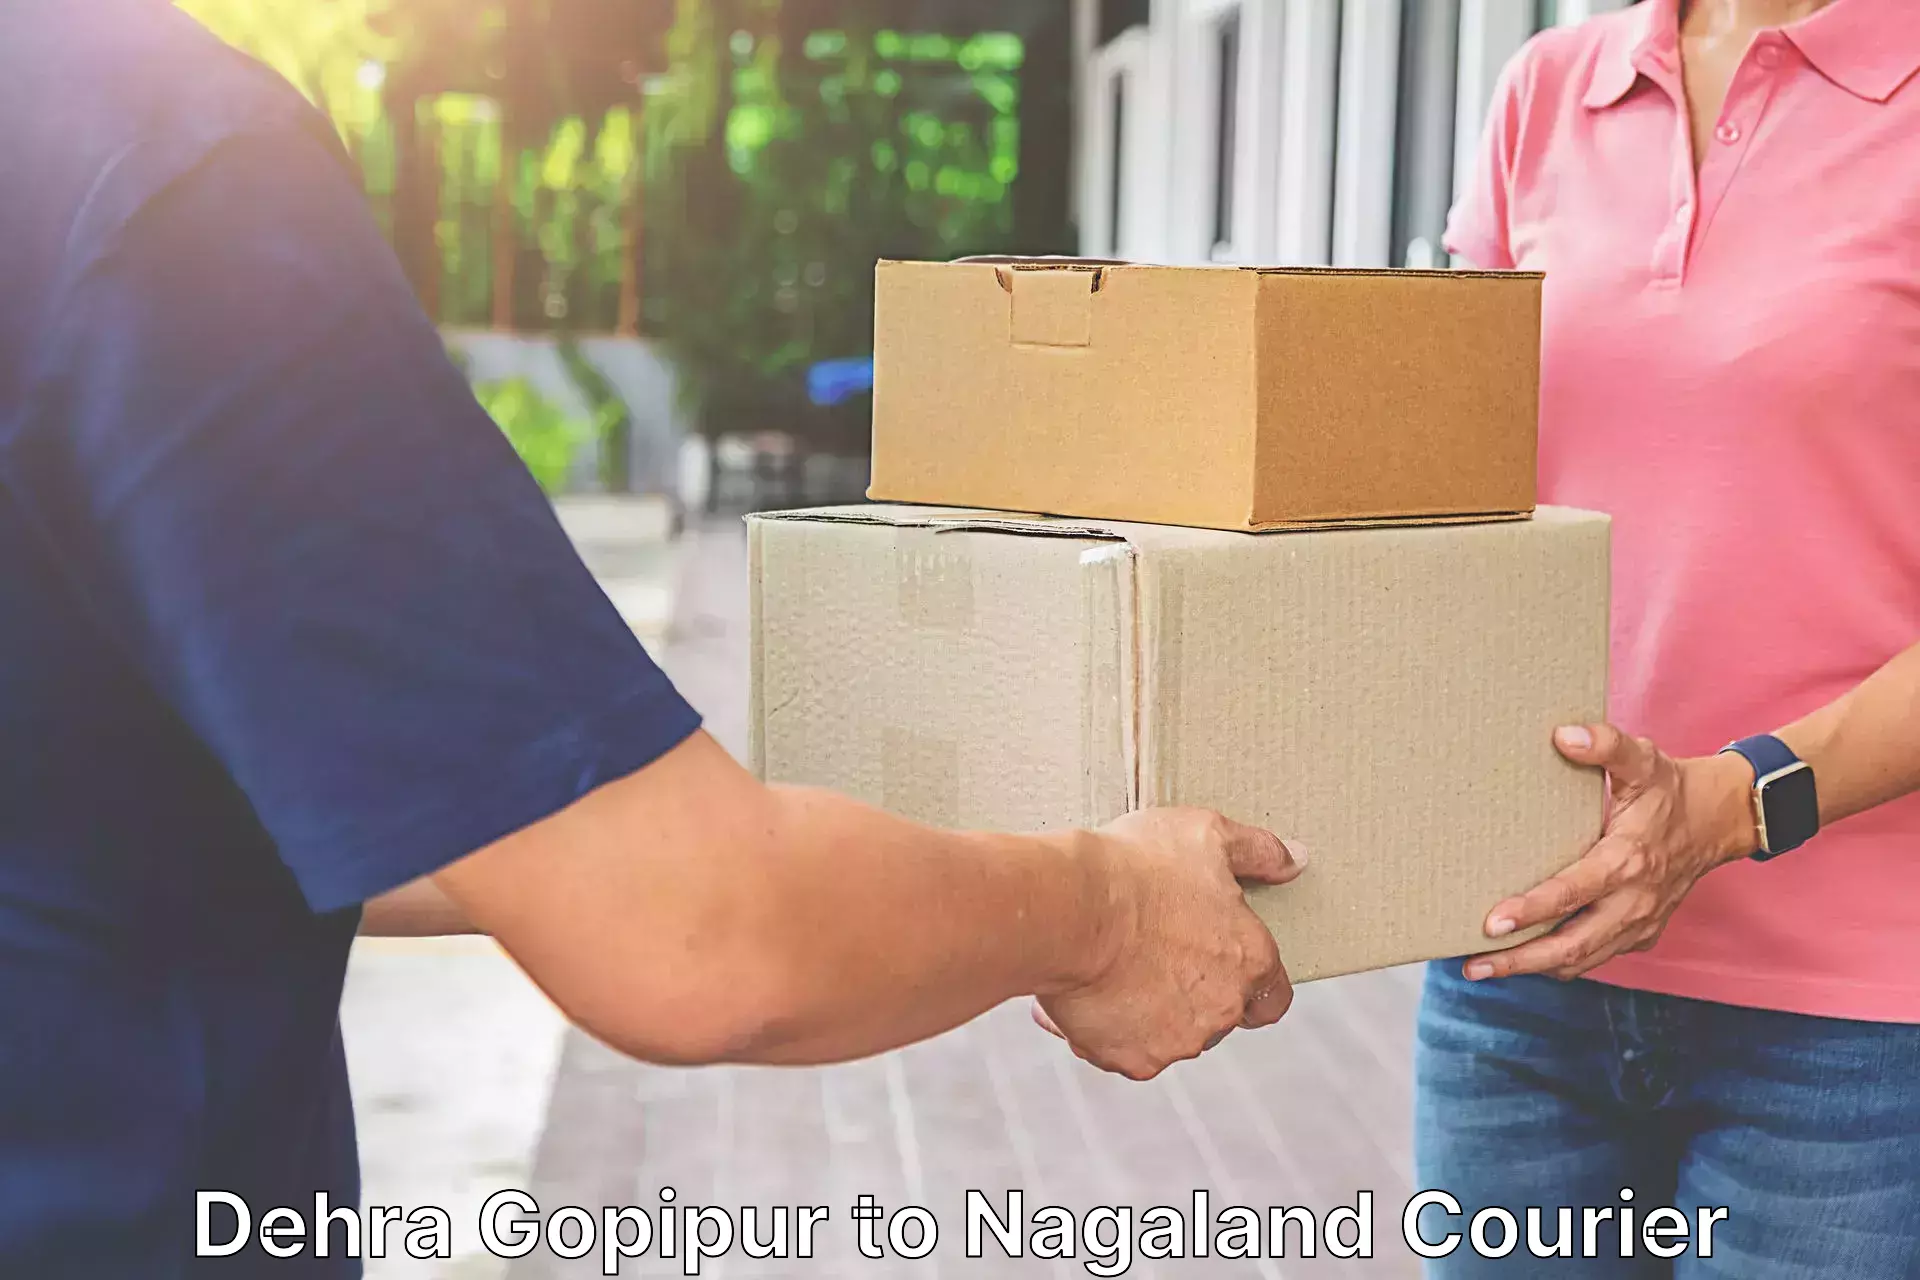 Professional parcel services Dehra Gopipur to Dimapur